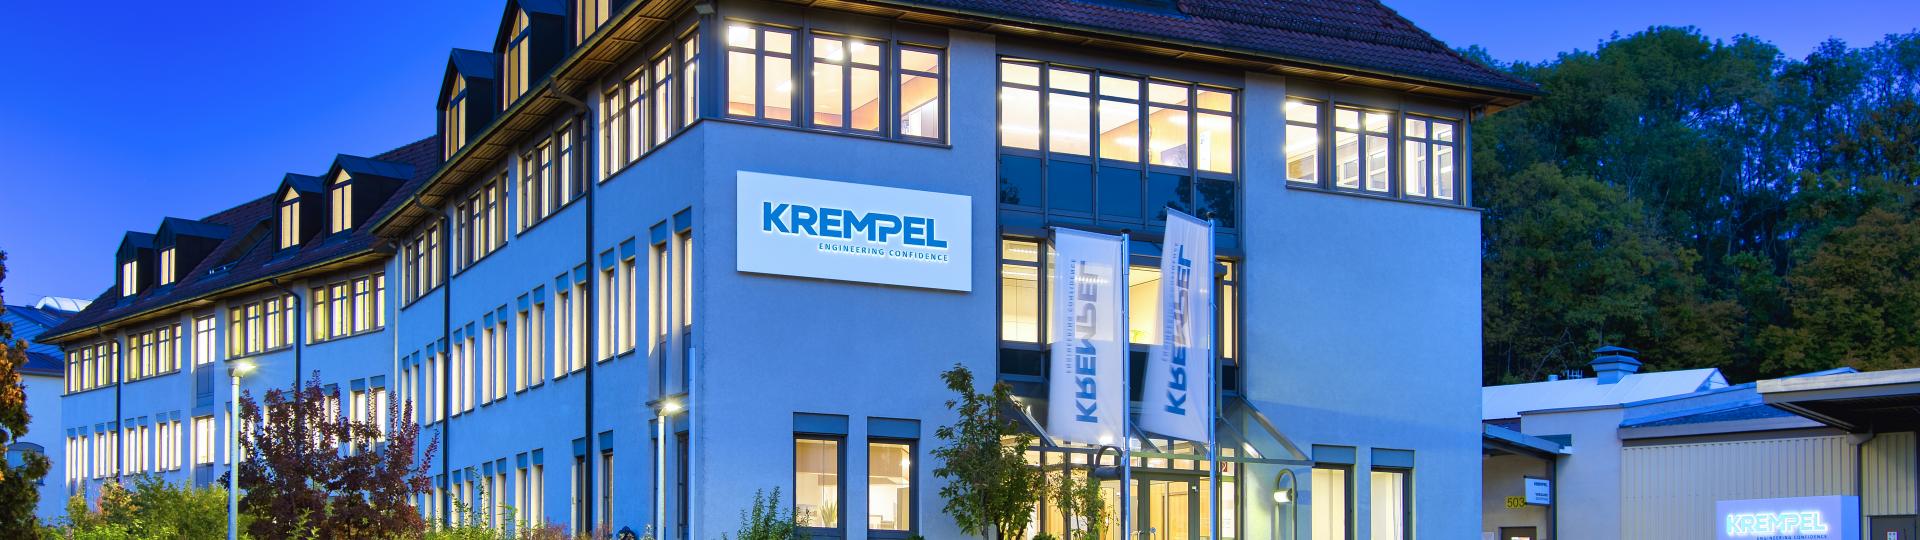 Firmengebäude Krempel Vaihingen/Enz